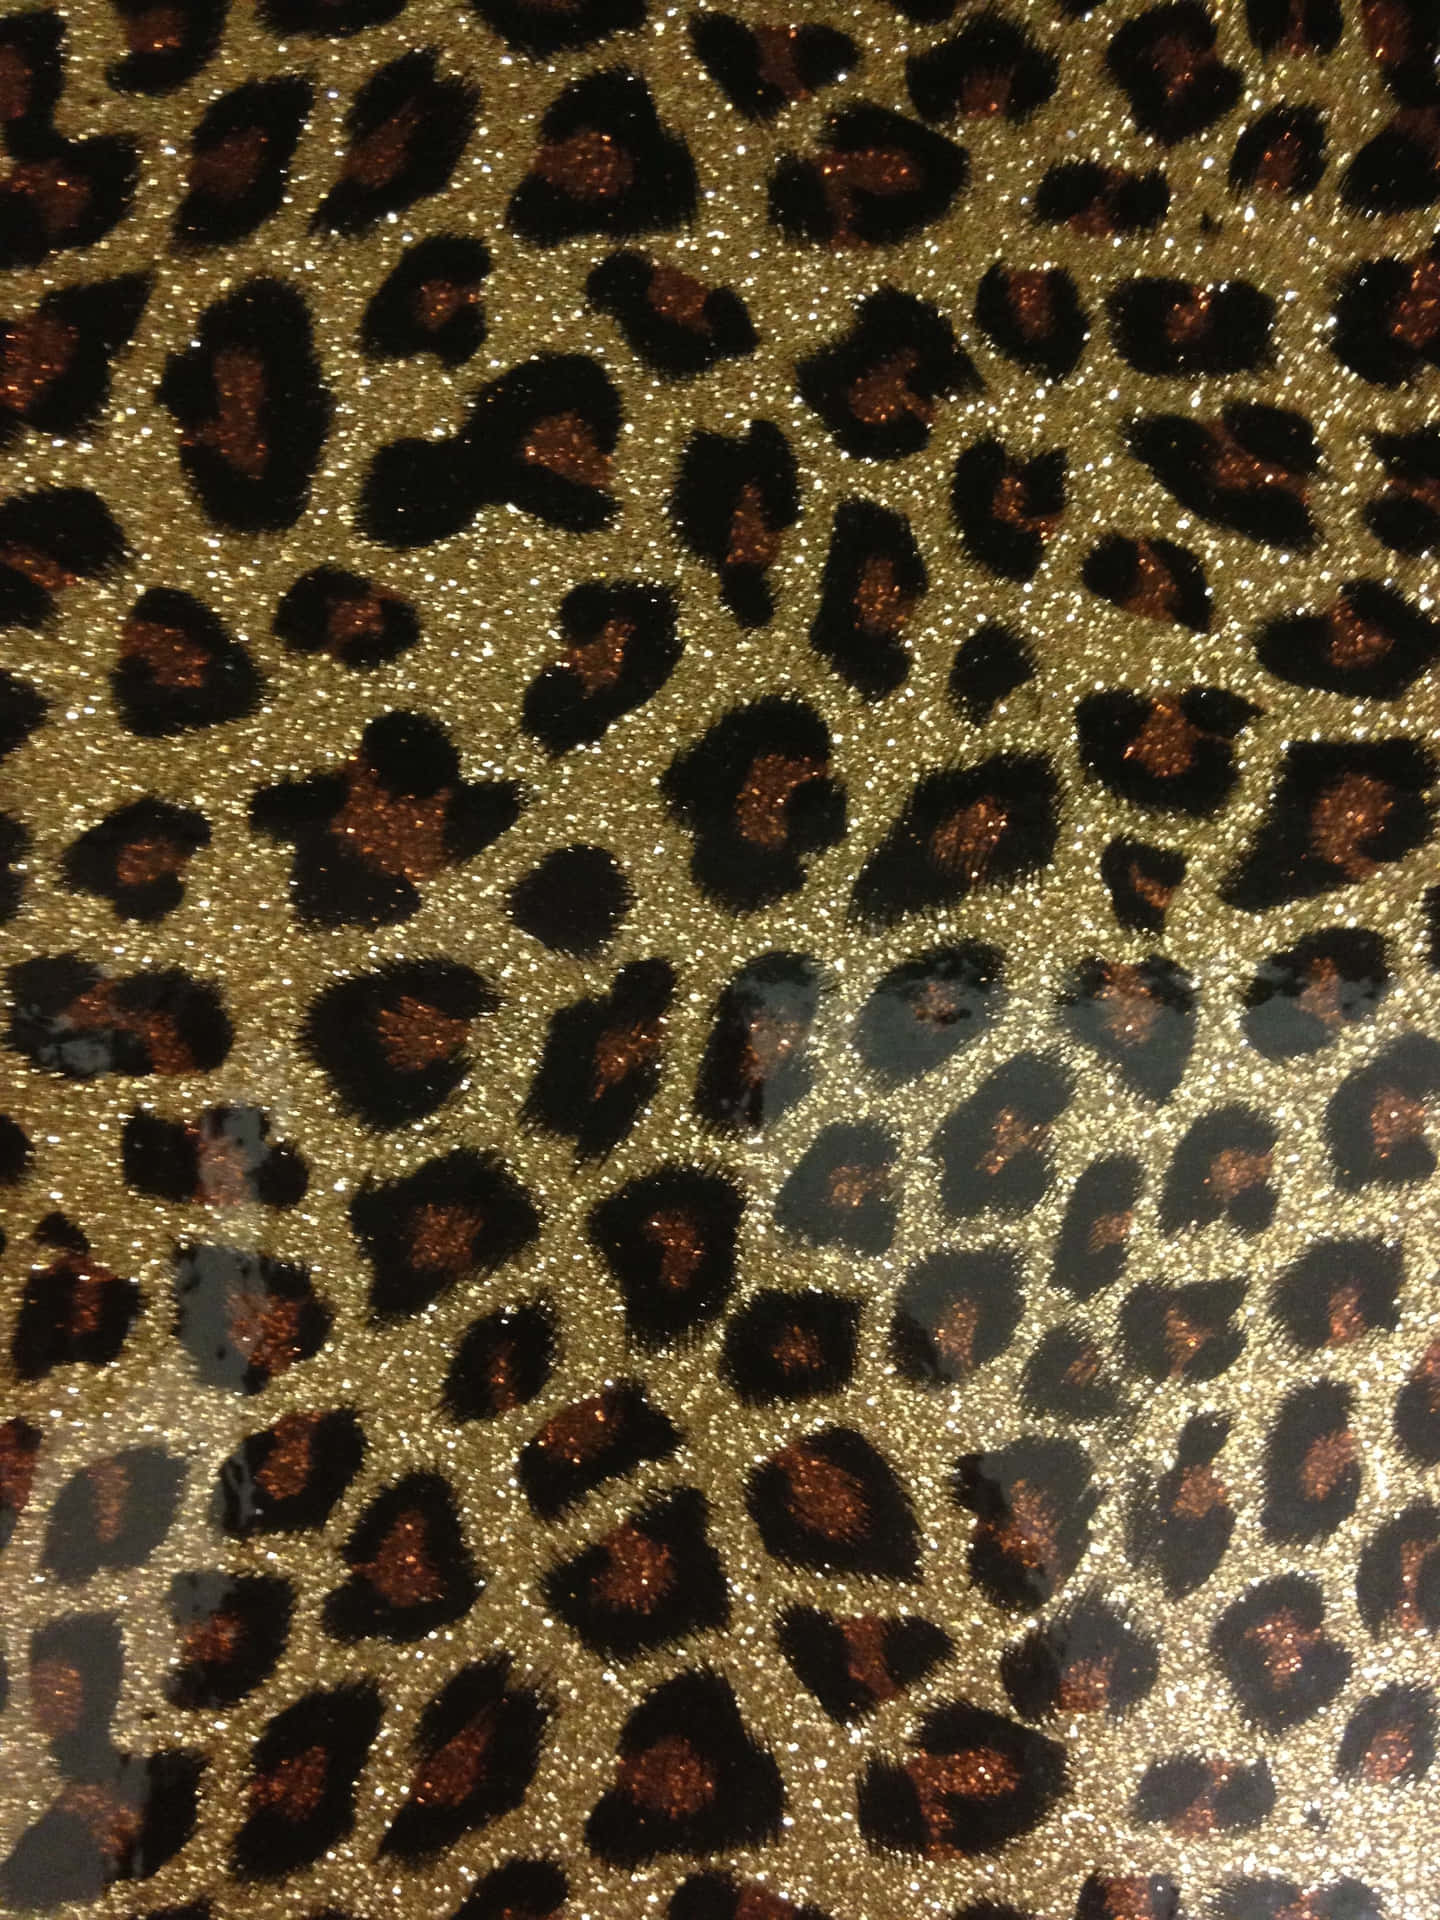 Skinnen skin som et glitrende leopard. Wallpaper